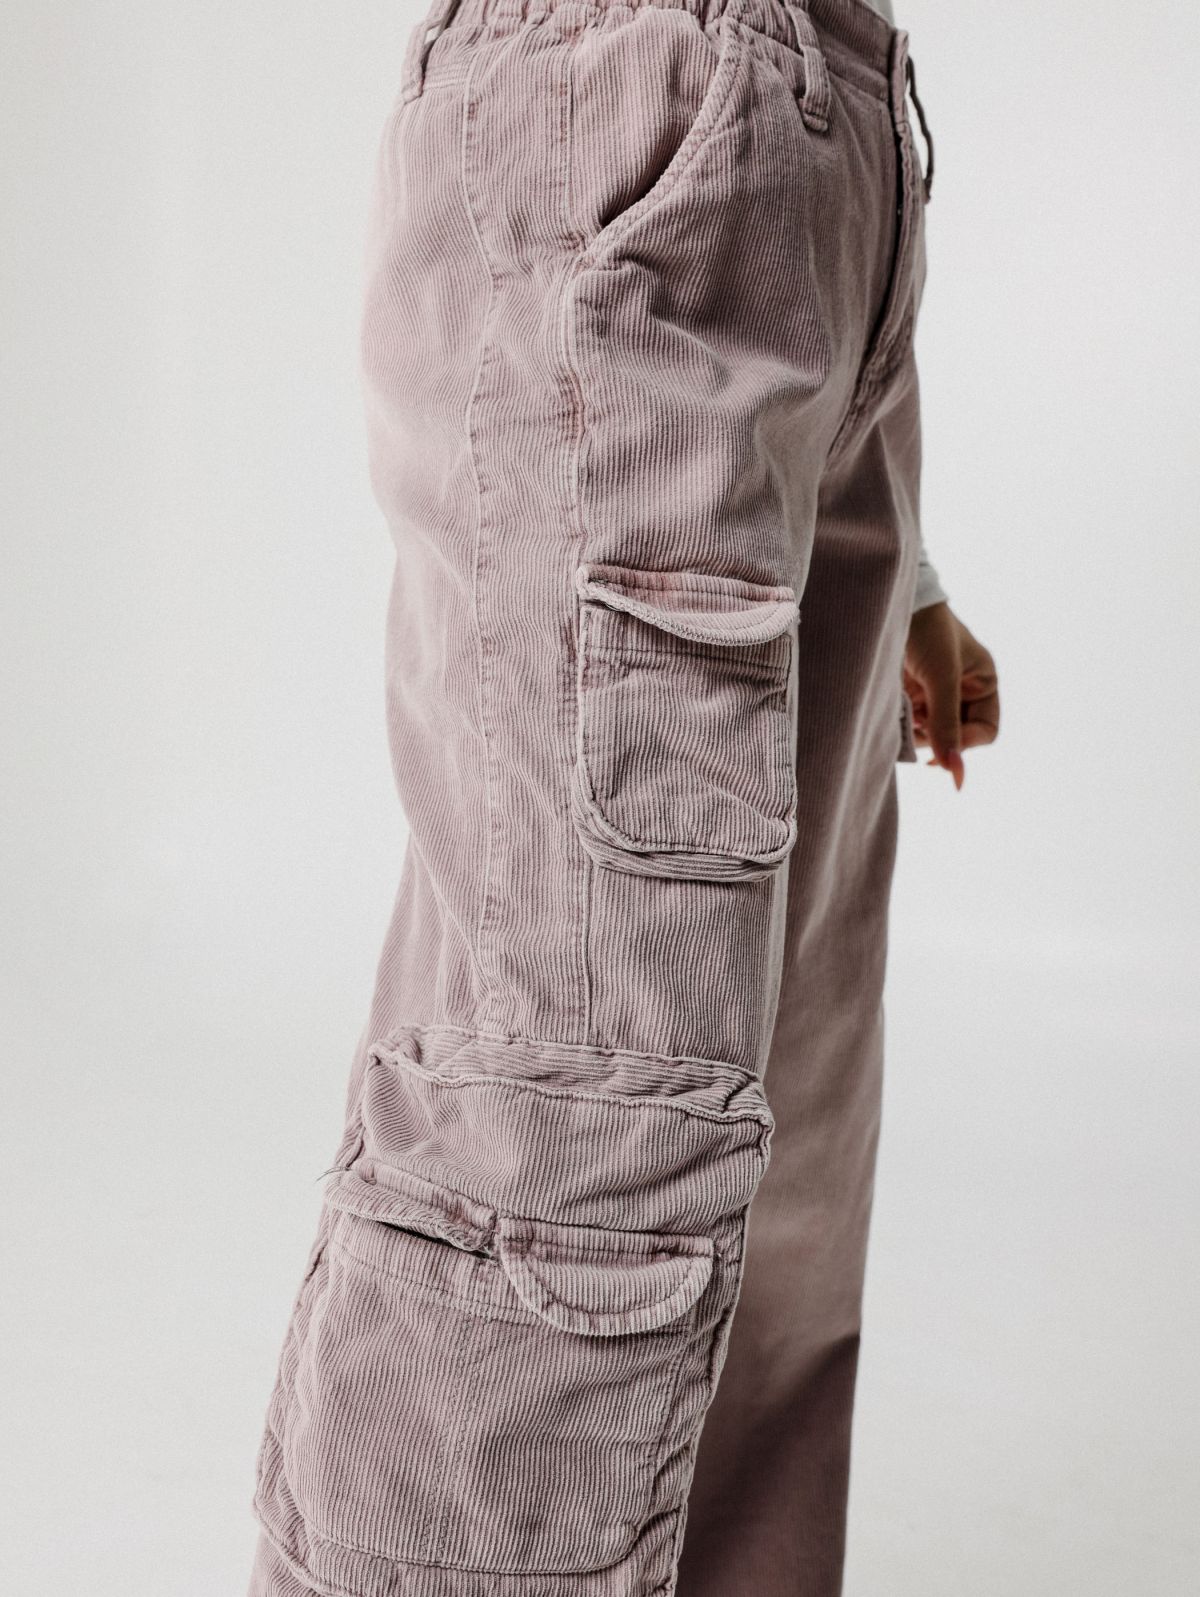  מכנסי דגמח עם כיסים של URBAN OUTFITTERS